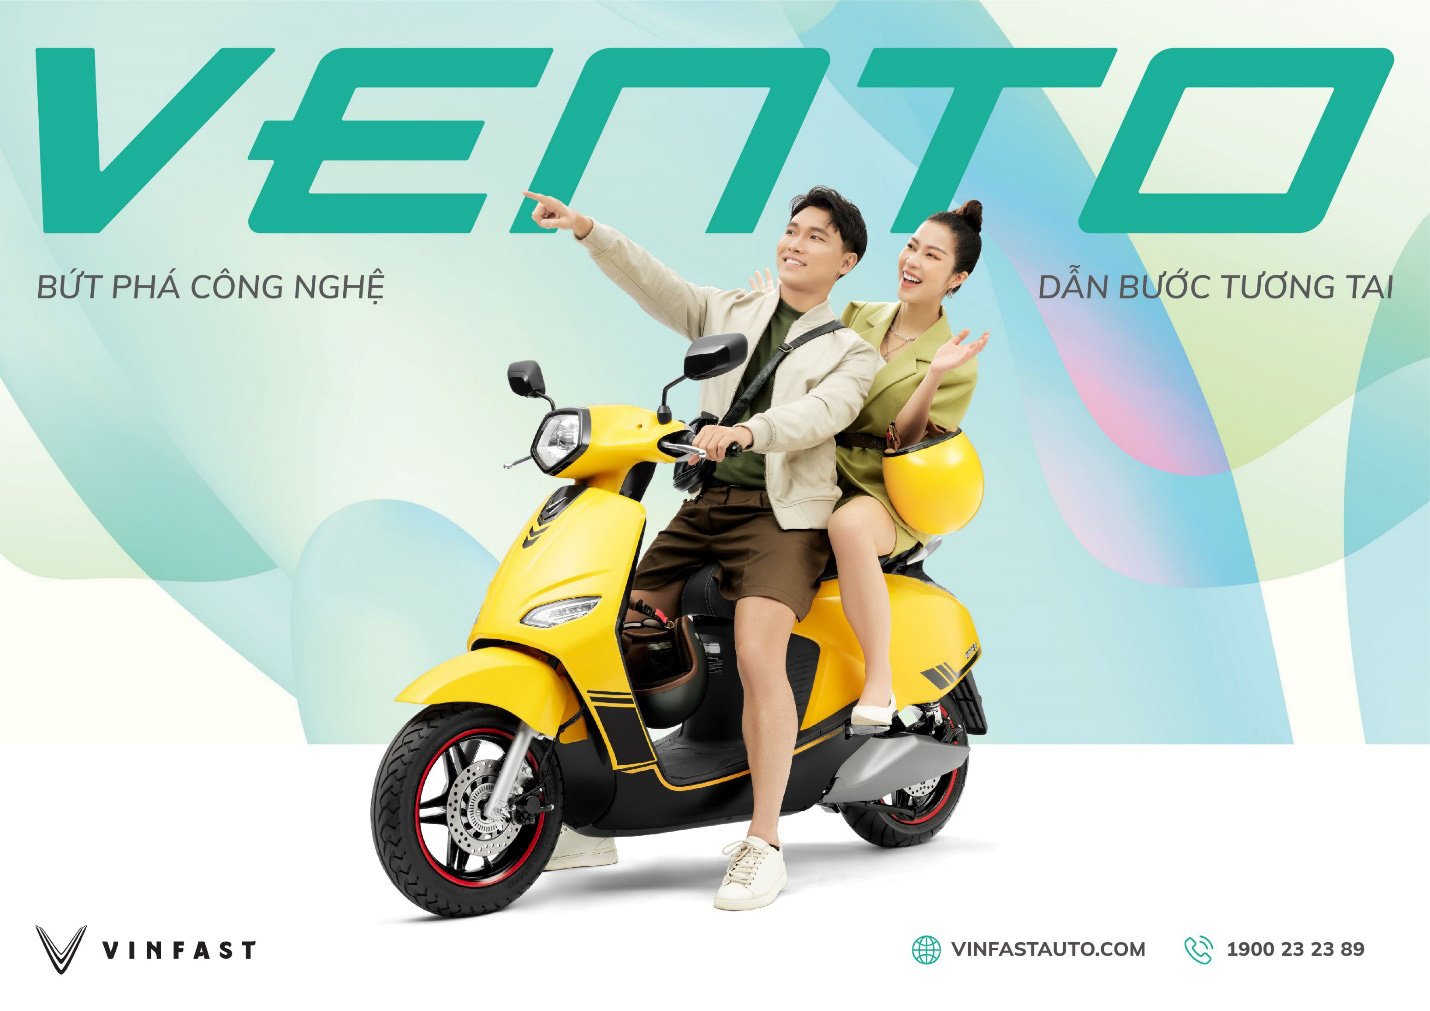 Một phát minh mới cho ngành công nghiệp vận tải: Vento VinFast - chiếc xe máy điện ấn tượng với thiết kế hiện đại và công nghệ tiên tiến. Hãy tới đây để khám phá ưu điểm của nó và nhận thấy tầm quan trọng của công nghệ tiên tiến trong cuộc sống hiện đại.